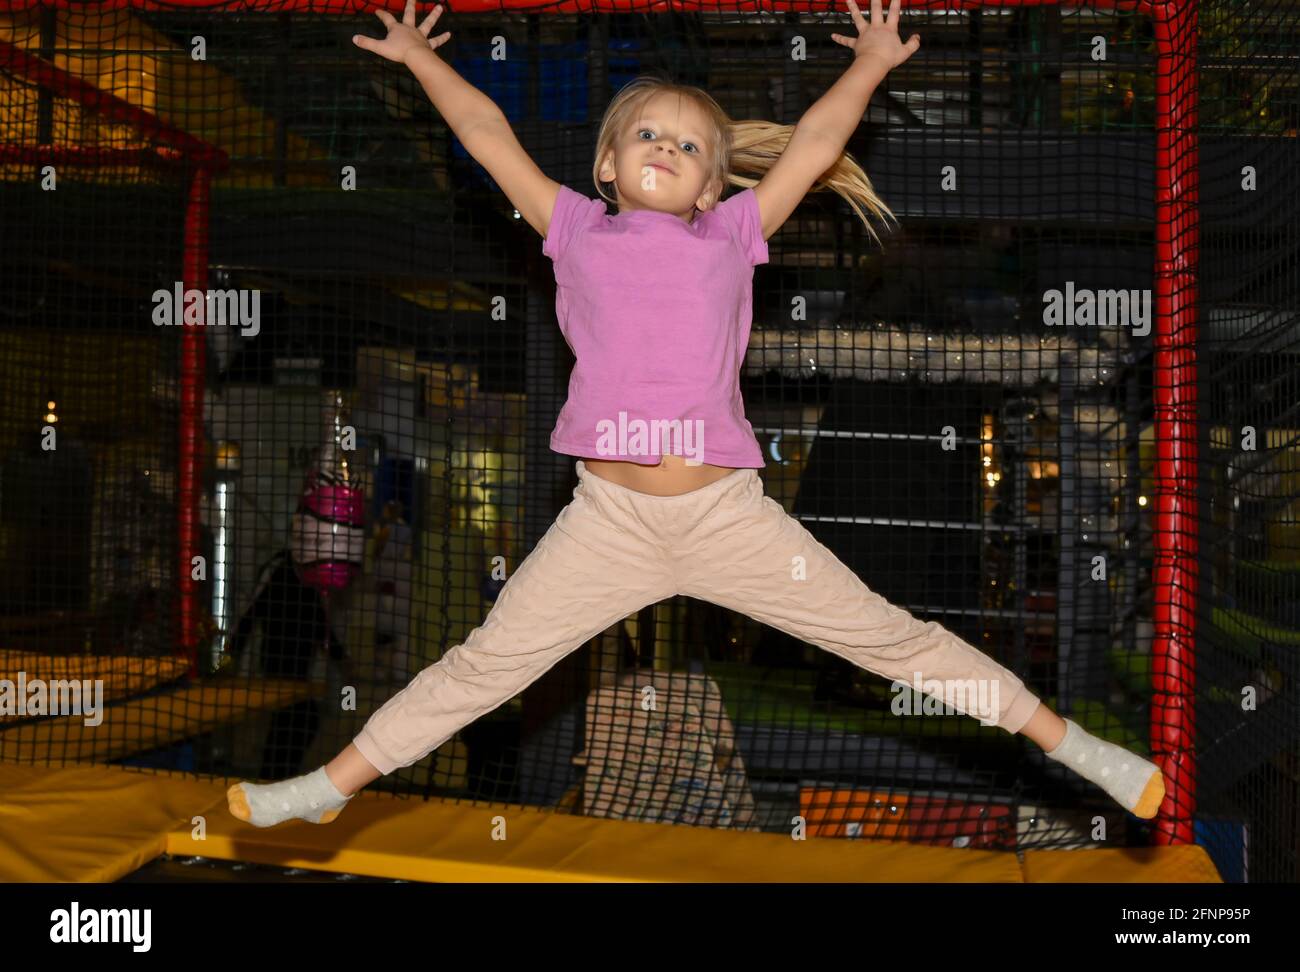 Niña saltando en un trampolín en el centro de juegos Fotografía de stock -  Alamy